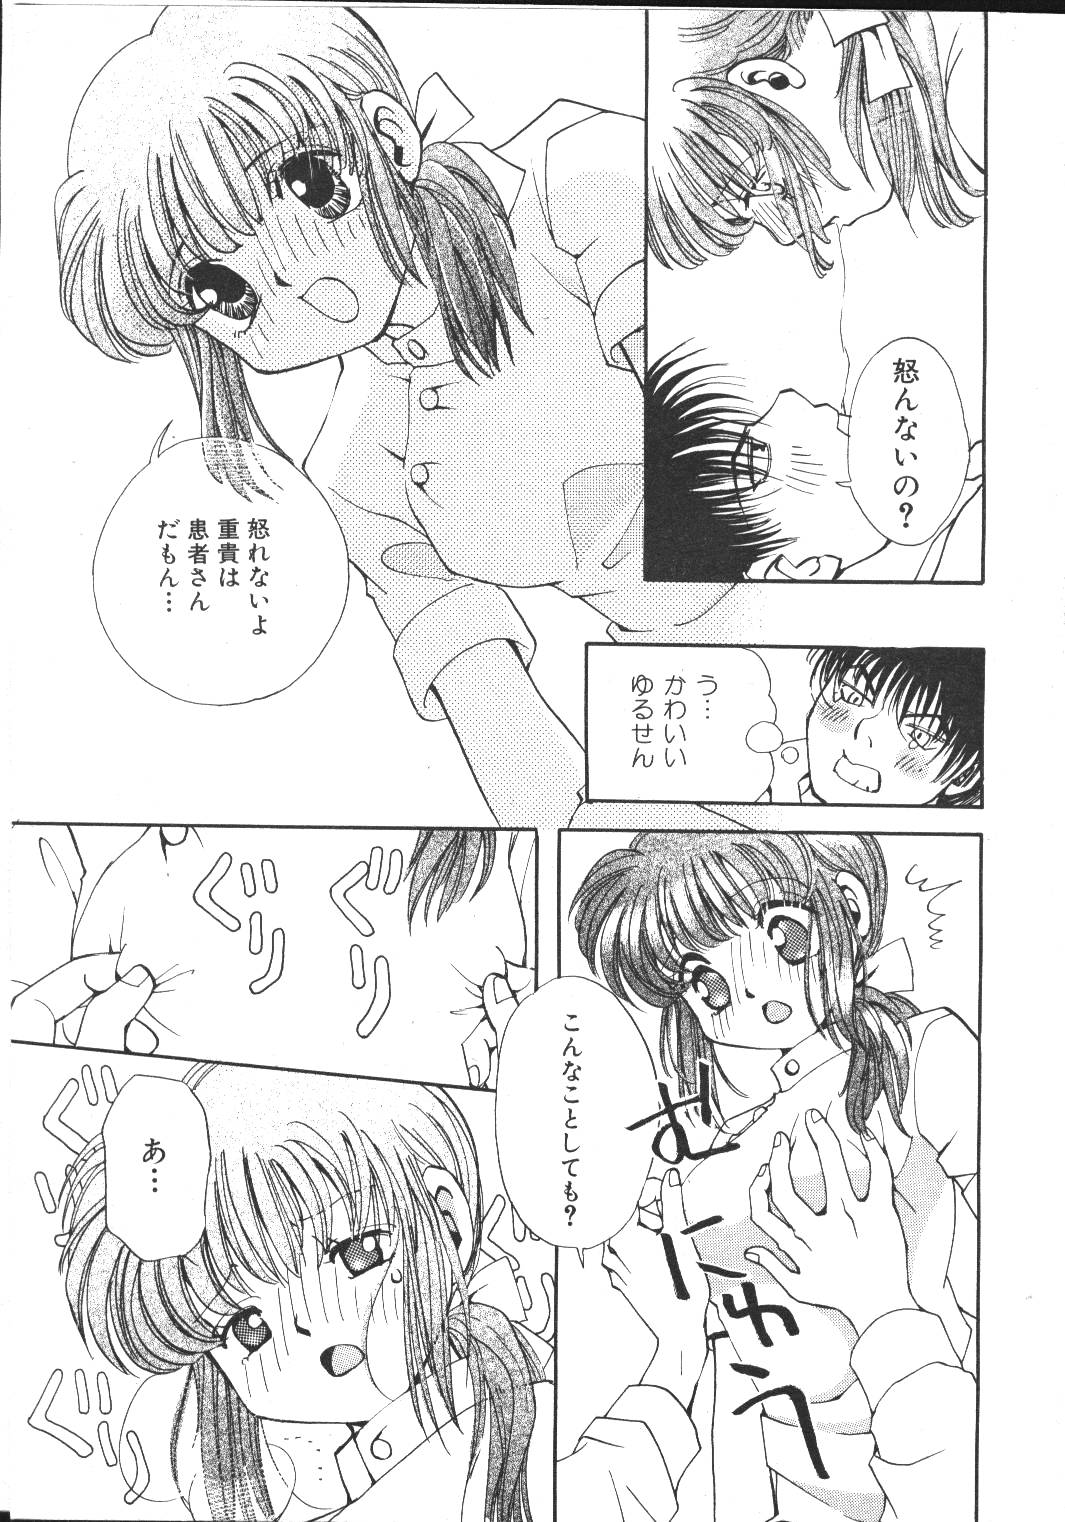 (成年コミック) [雑誌] COMIC 桃色小町 1999年03月号